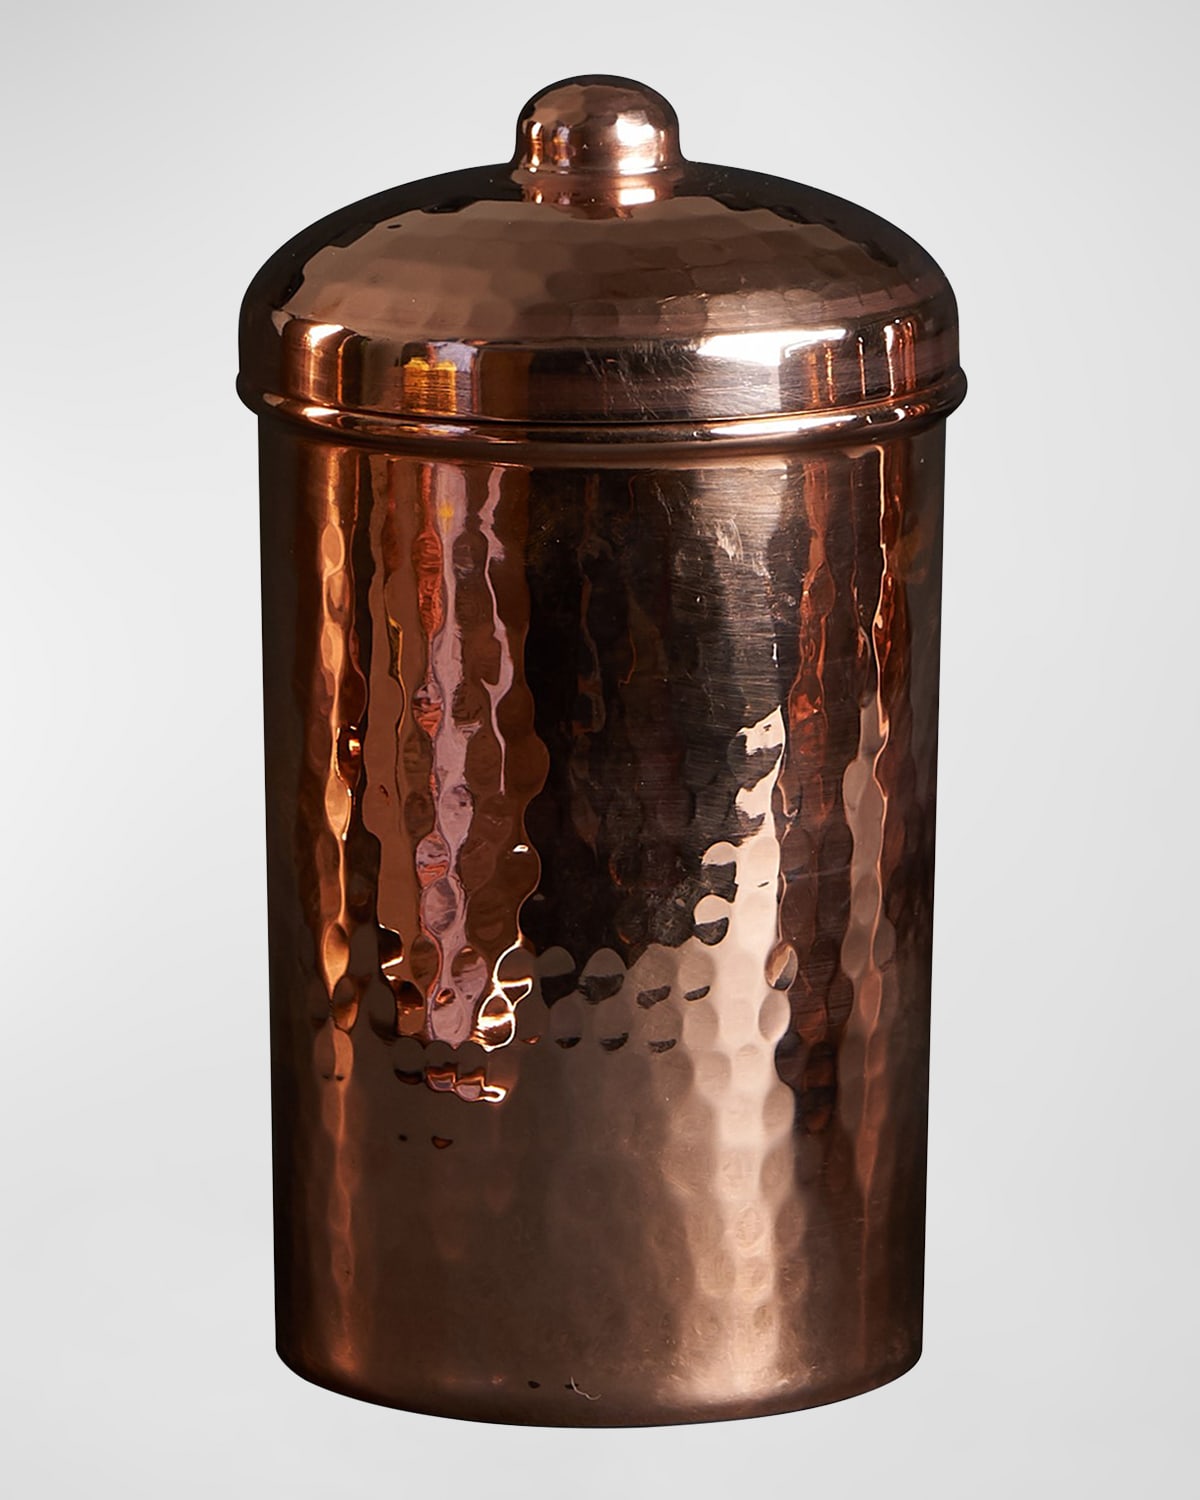 Sertodo Copper Copper Kitchen Canister - 2 Cups